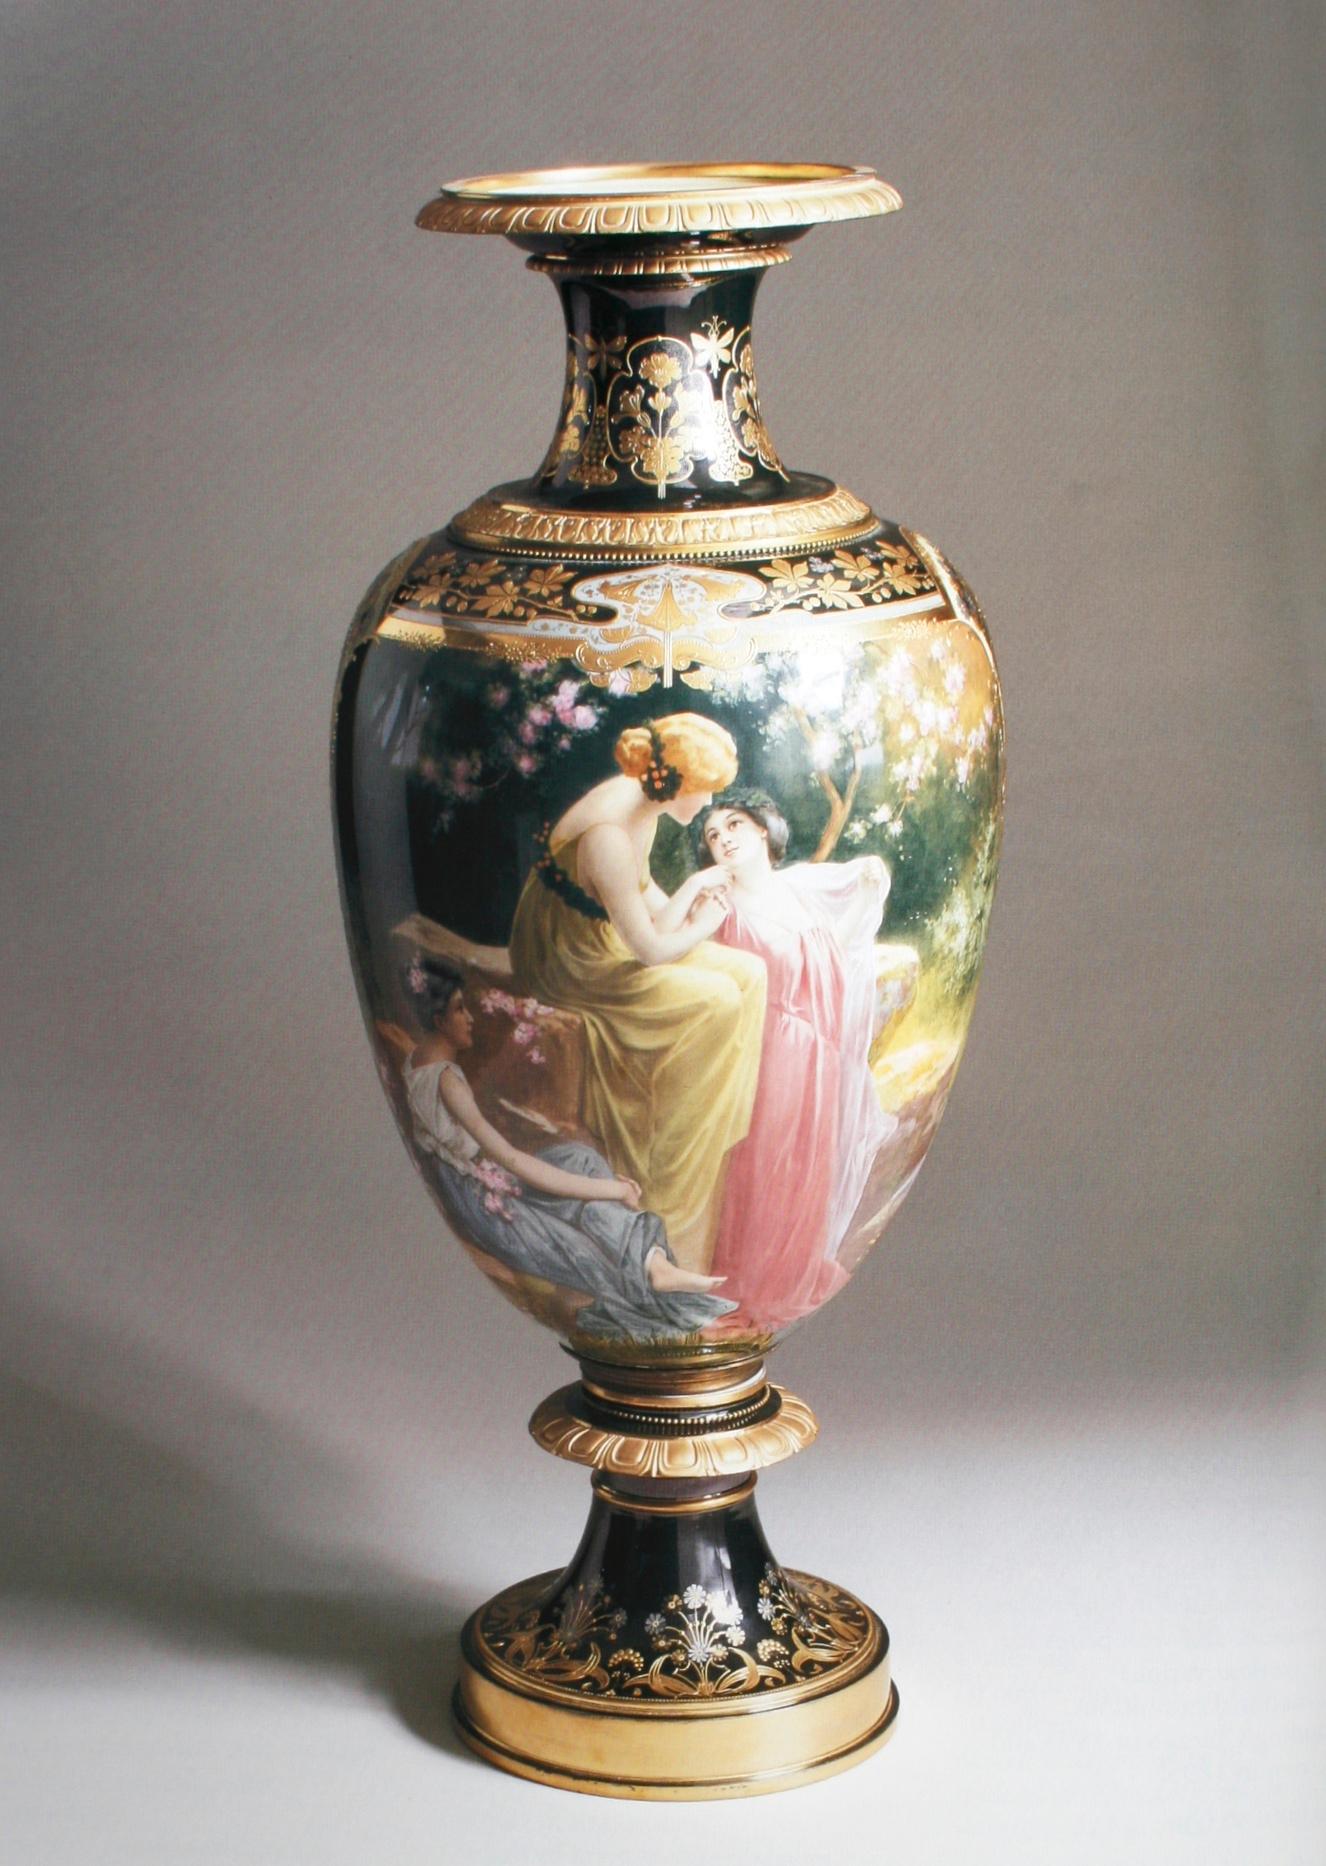 Fin du 20e siècle Meubles, céramiques et décorations Sotheby's, succession de George Parker, Jr. en vente